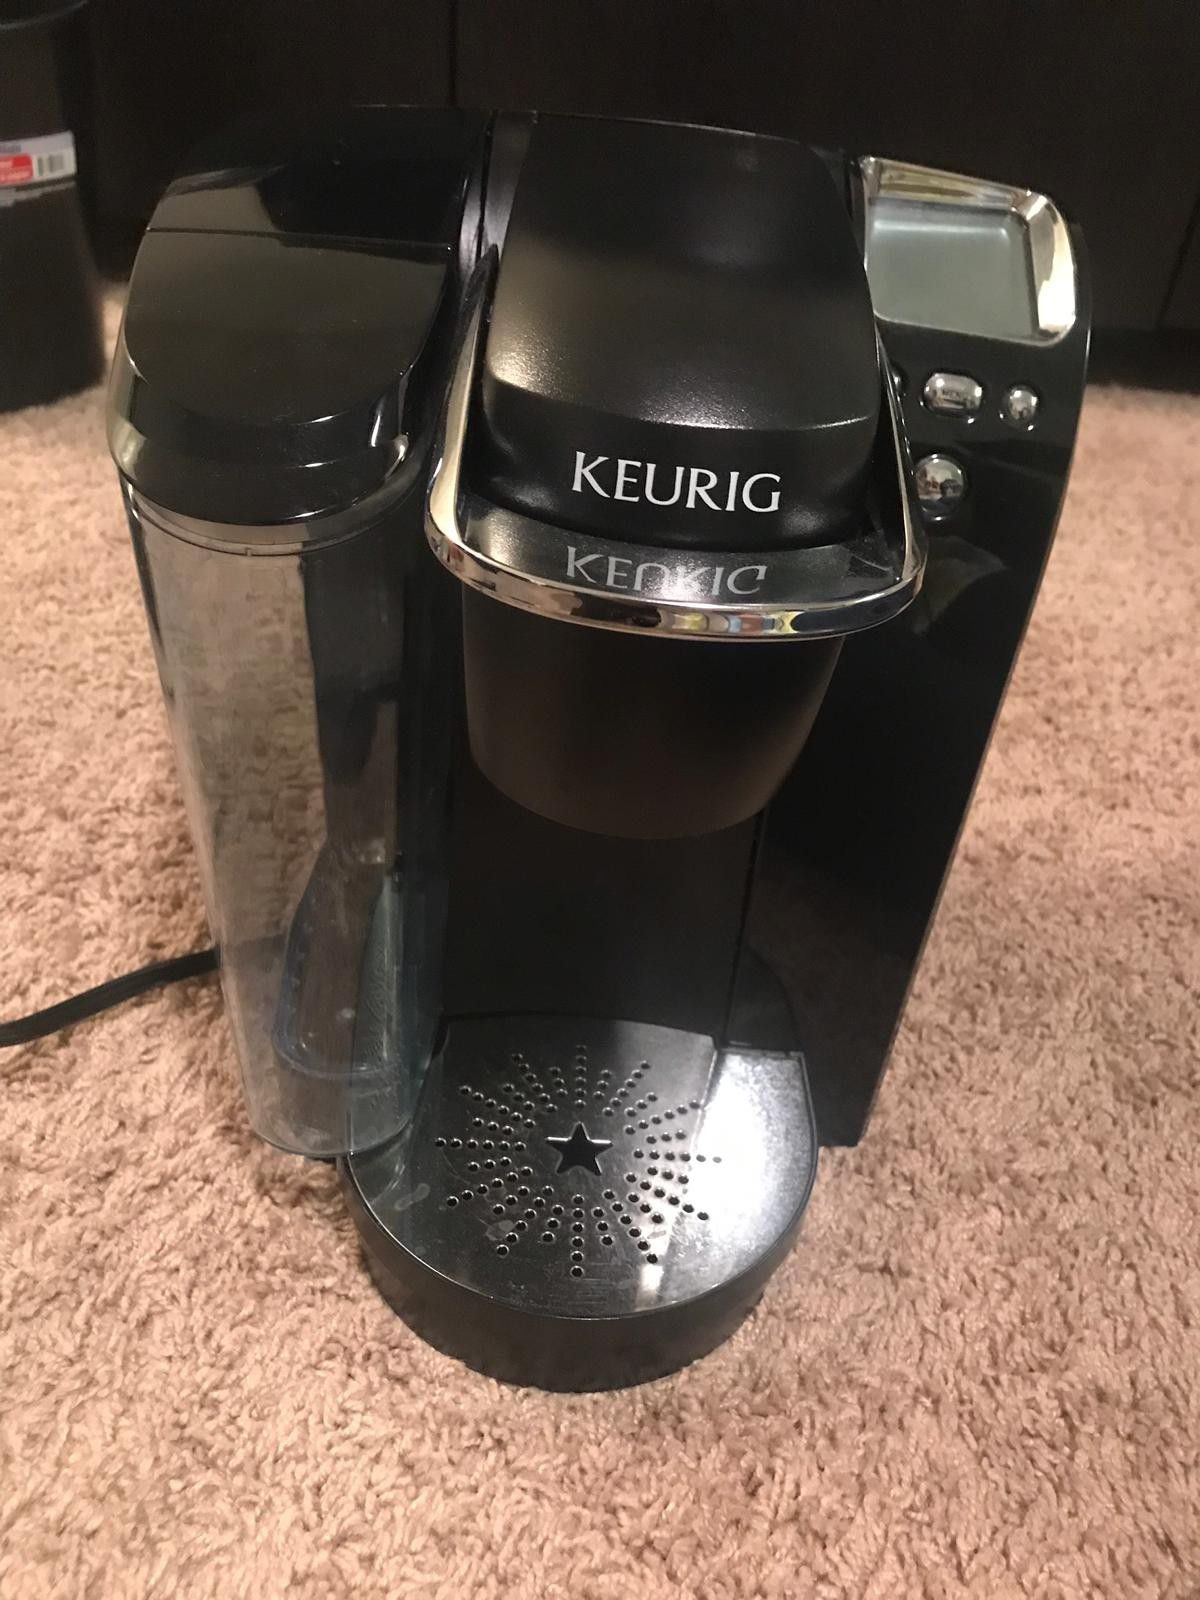 Keurig K70 Coffee Maker